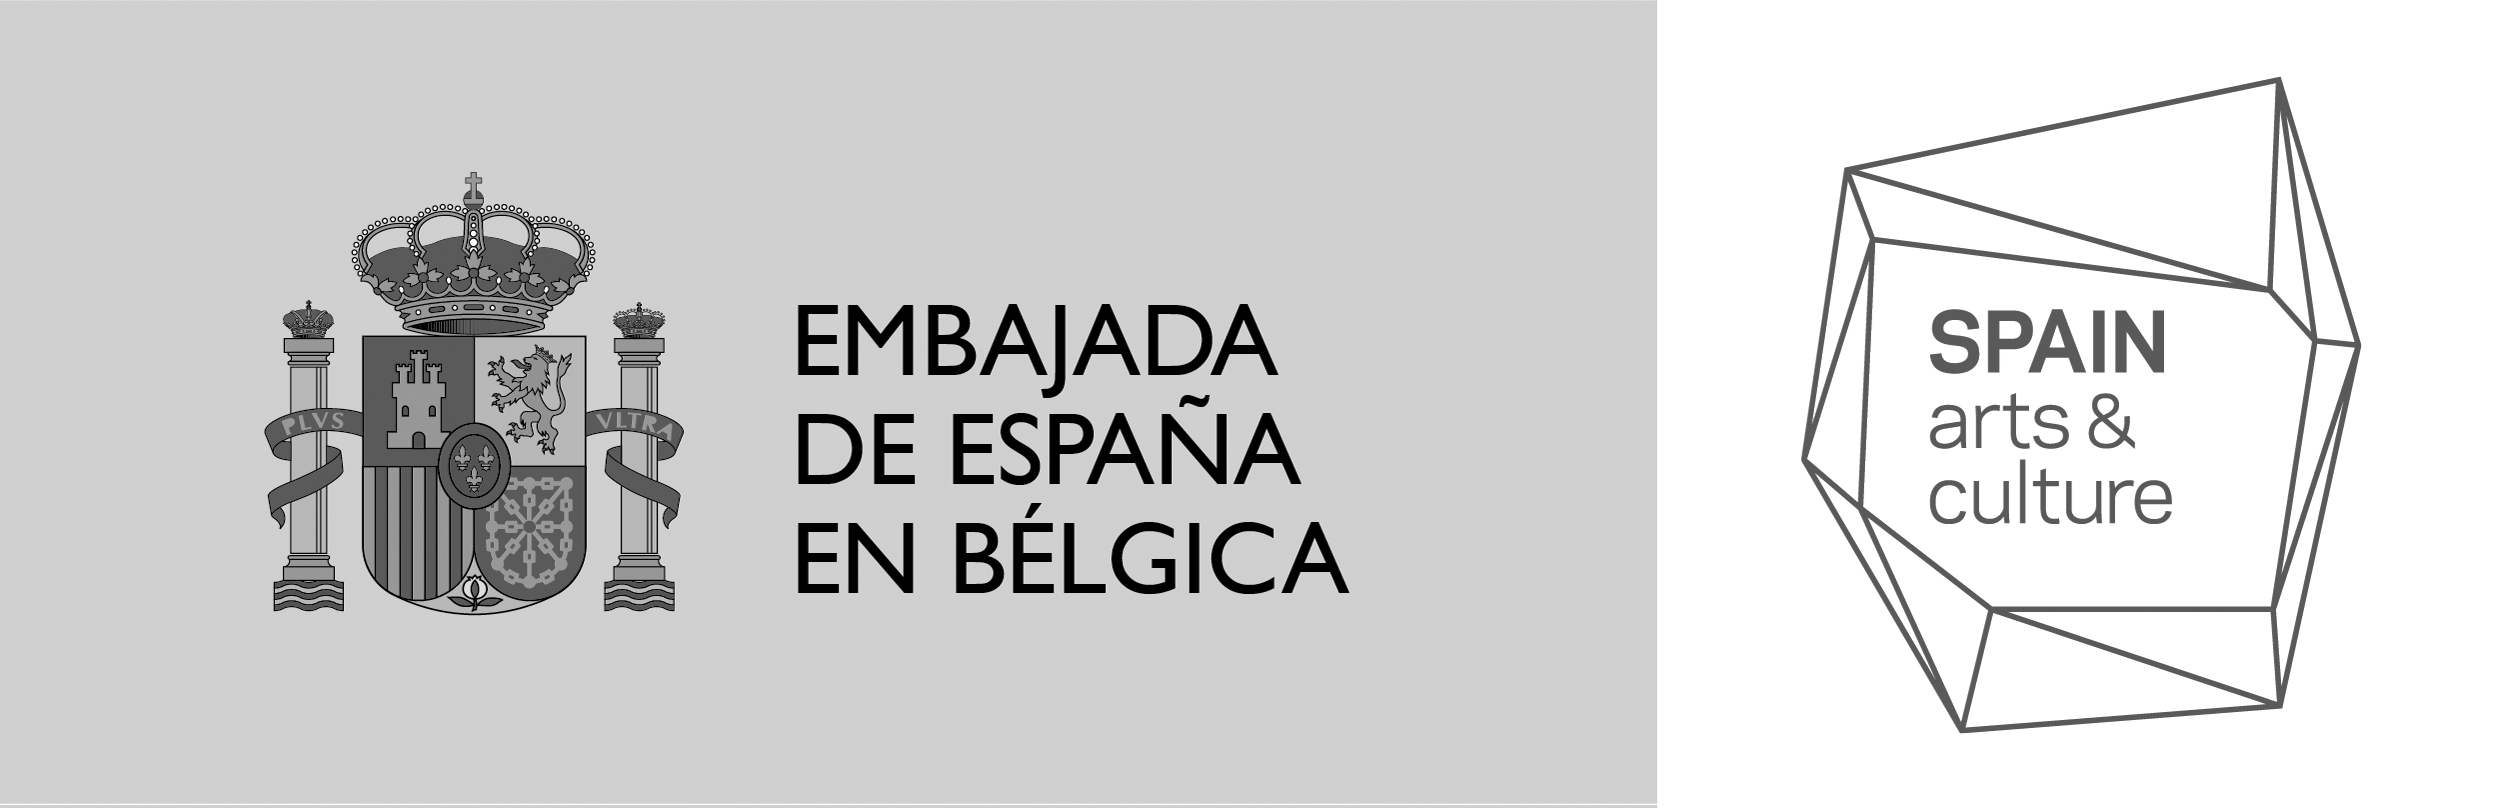 embajada-de-espana-en-belgica-blanco-y-negro